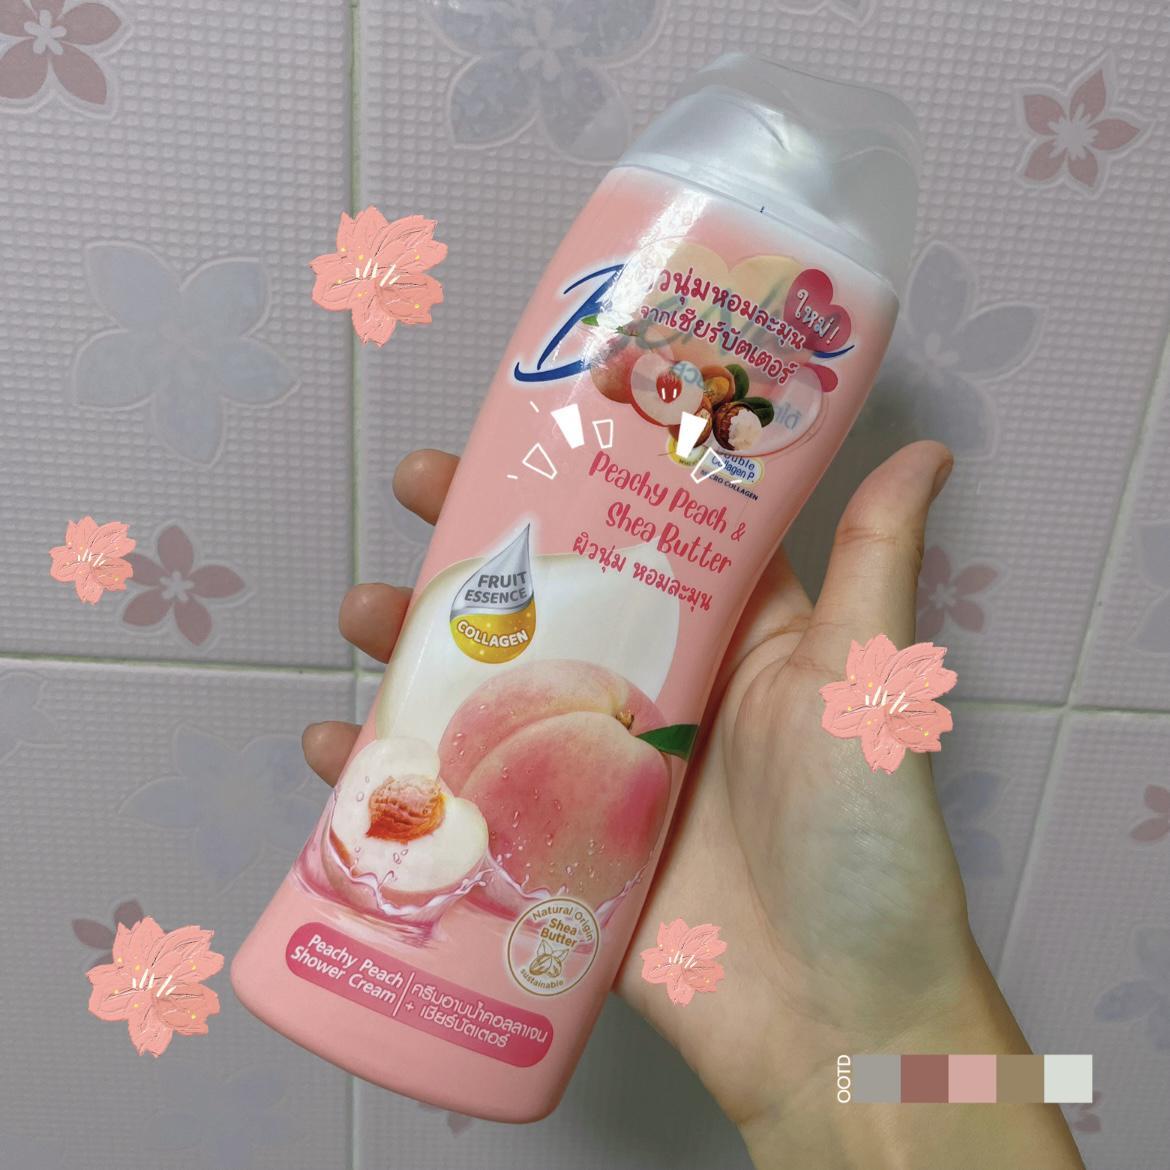 ภาพหน้าปก กลิ่นพีชแตะจมูก สะอาดหอมสดชื่อด้วย Benice Peachy Peach Shower Cream  ที่:0